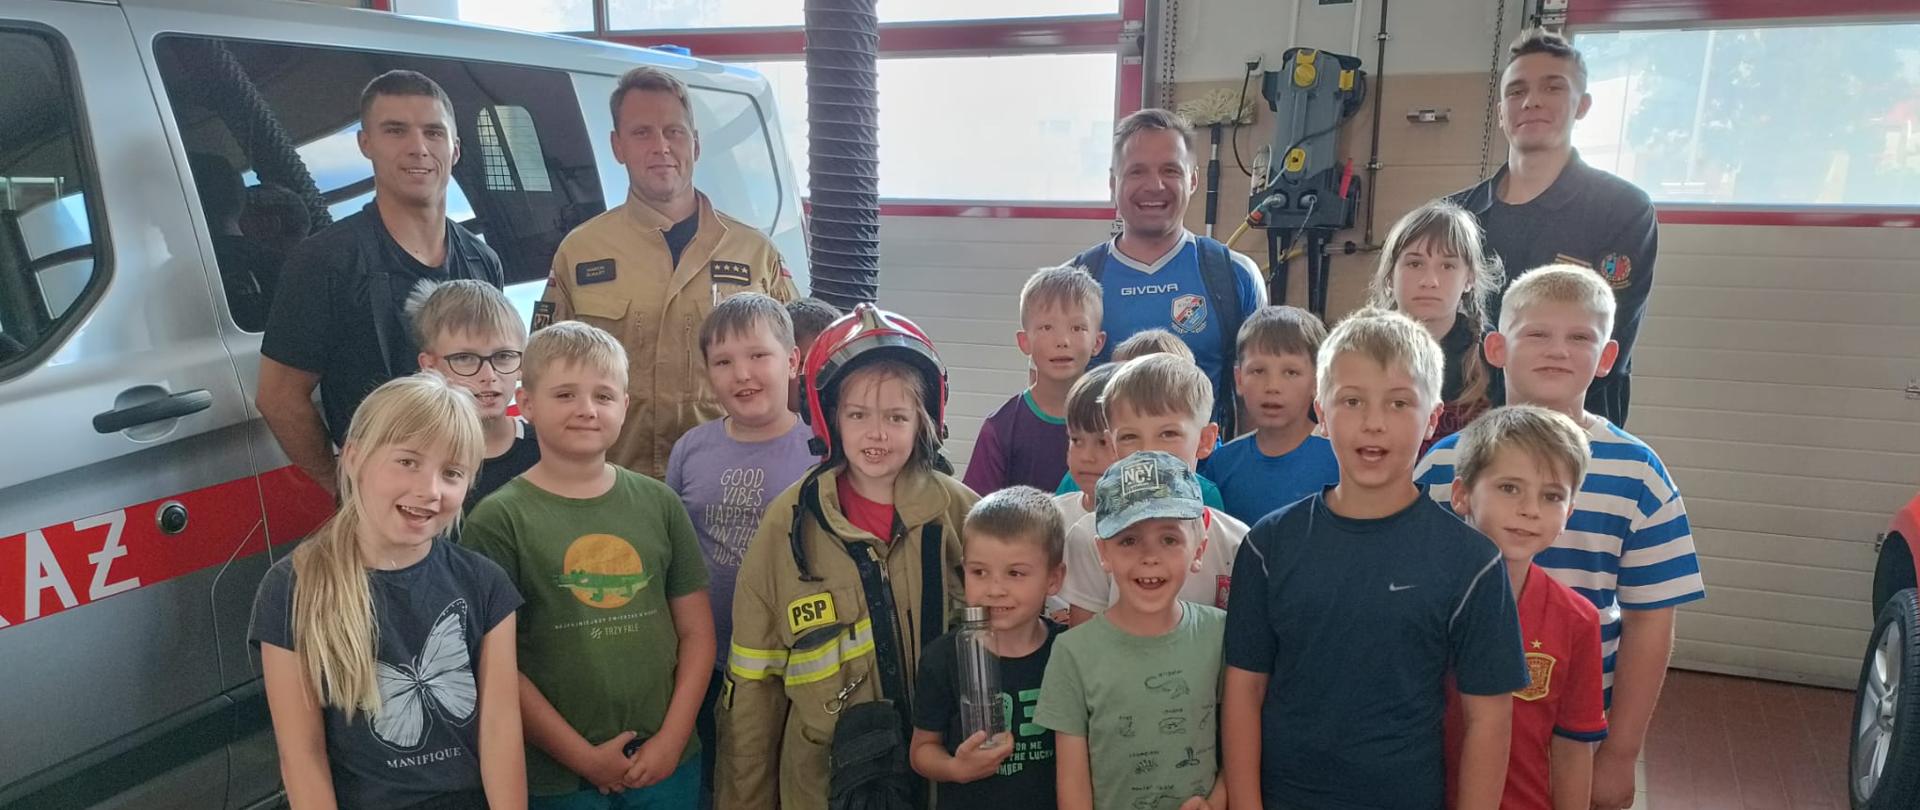 Zdjęcie przedstawia dzieci wraz ze strażakami pozującymi do zdjęcia w garażu strażnicy.